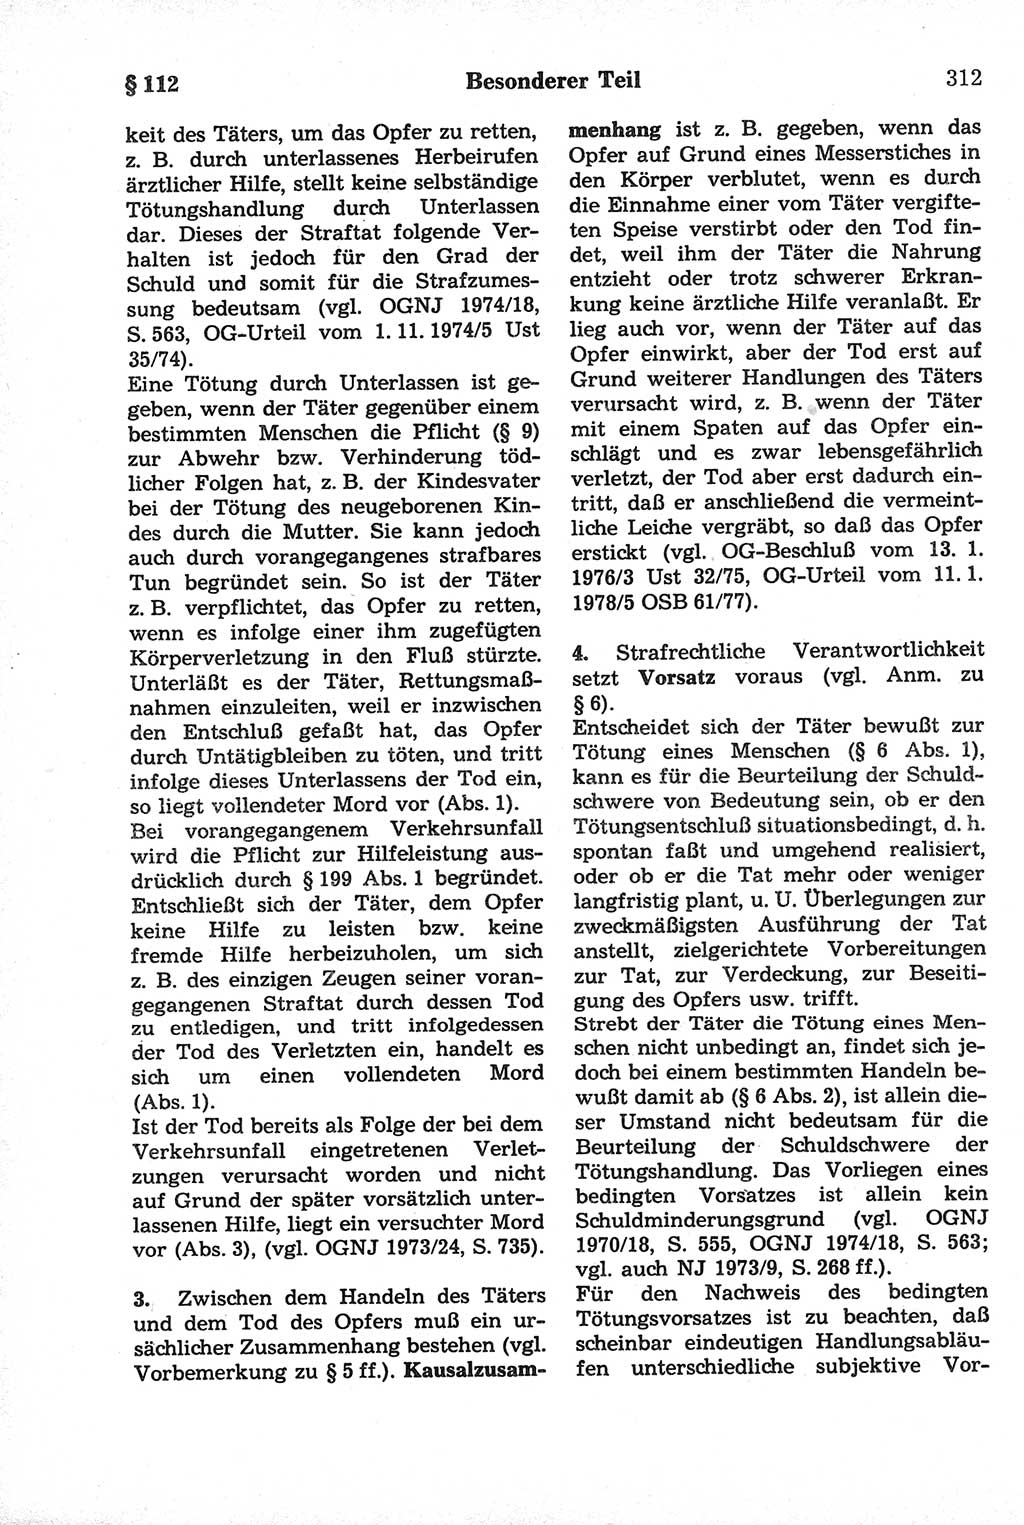 Strafrecht der Deutschen Demokratischen Republik (DDR), Kommentar zum Strafgesetzbuch (StGB) 1981, Seite 312 (Strafr. DDR Komm. StGB 1981, S. 312)